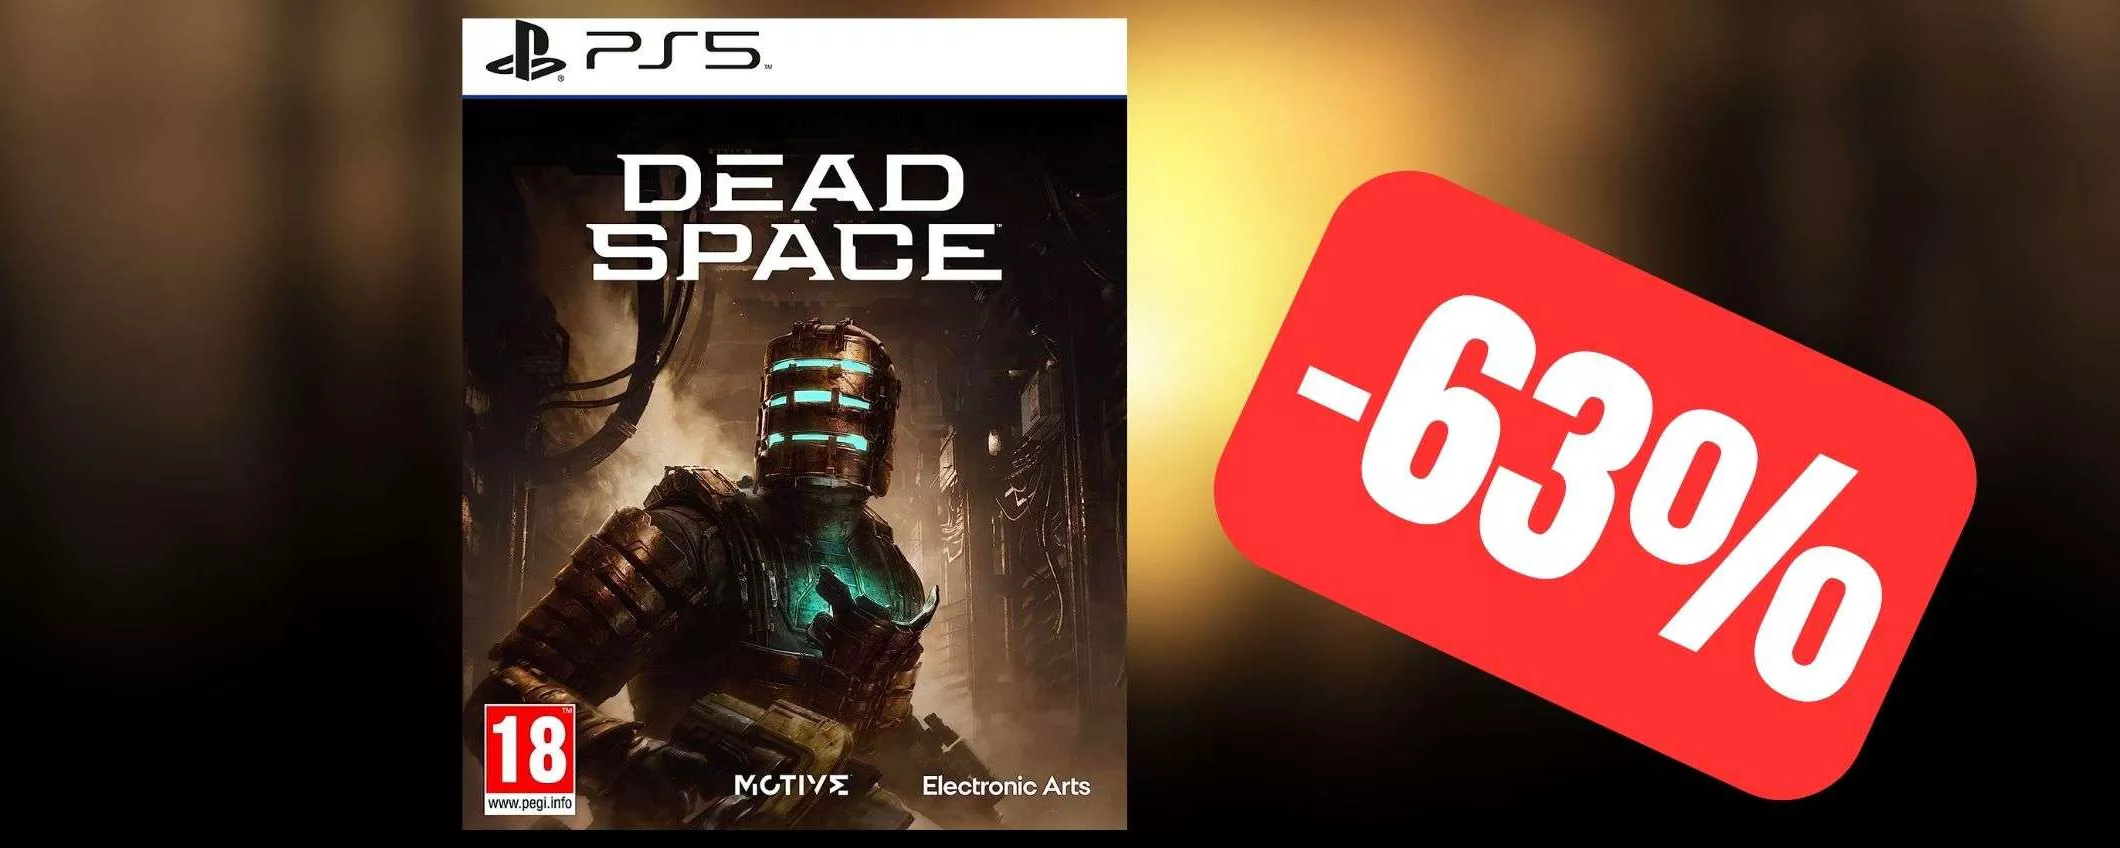 Dead Space PS5: offerta RINNOVATA, tuo a meno di 30€